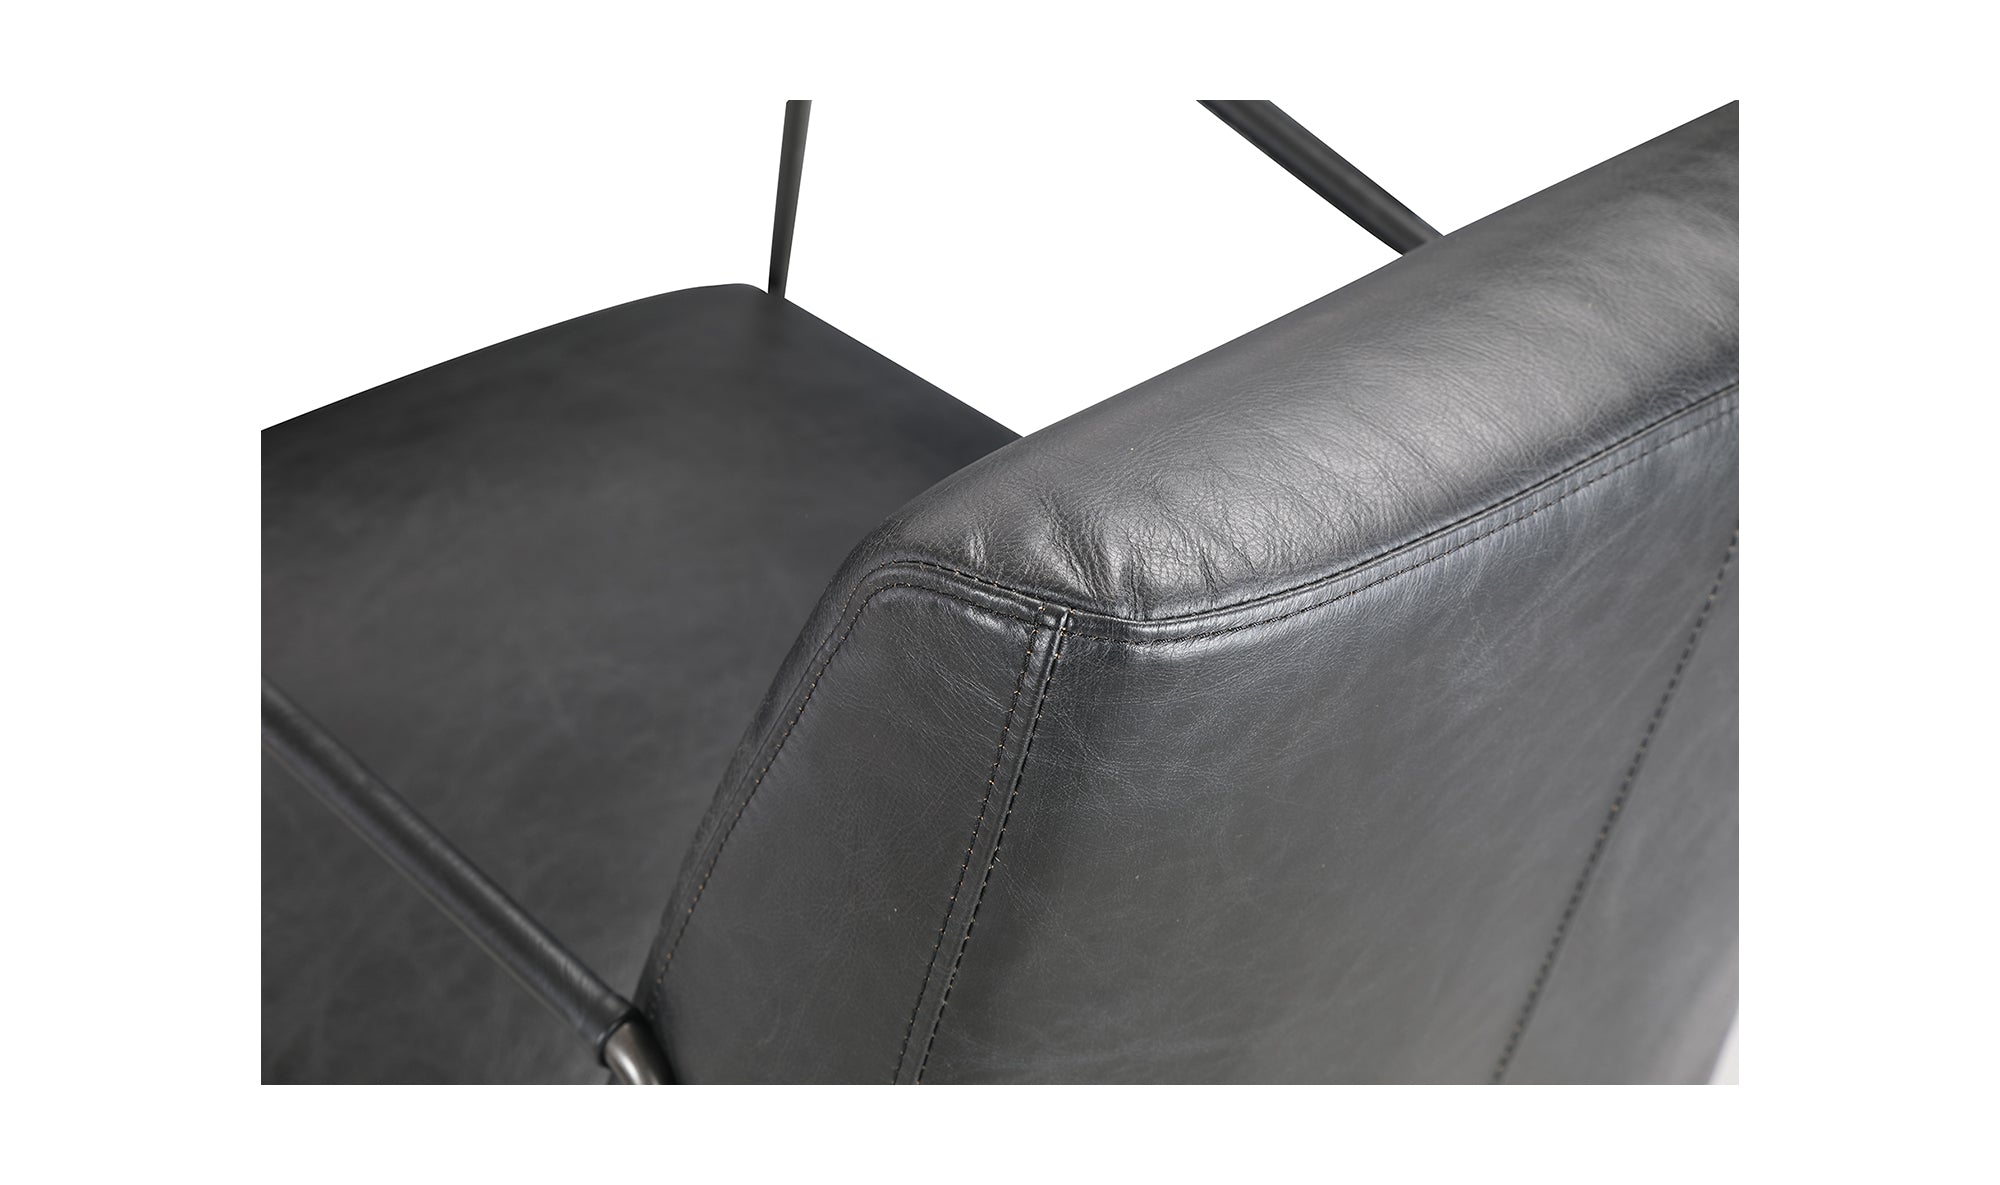 Dagwood Leather Armchair - Black